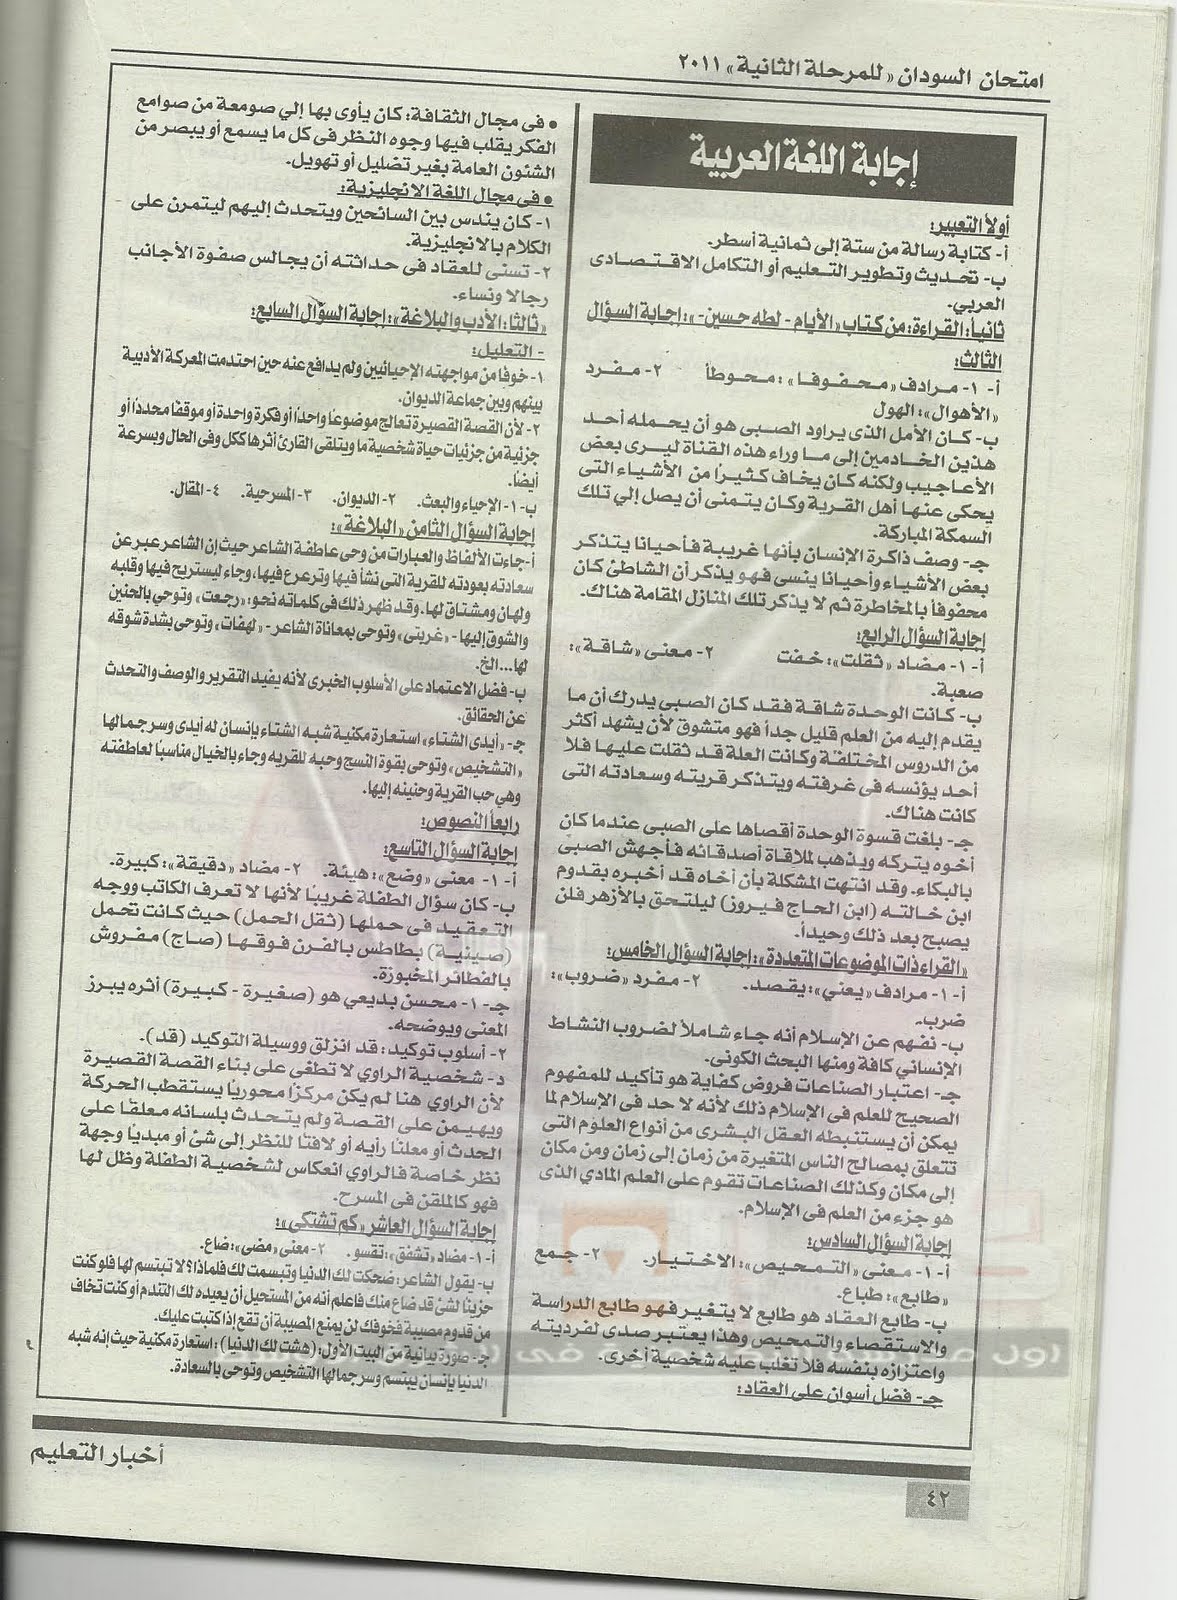 اجابات امتحانات السودان كاملة للثانوية العامة 2011 40+copy